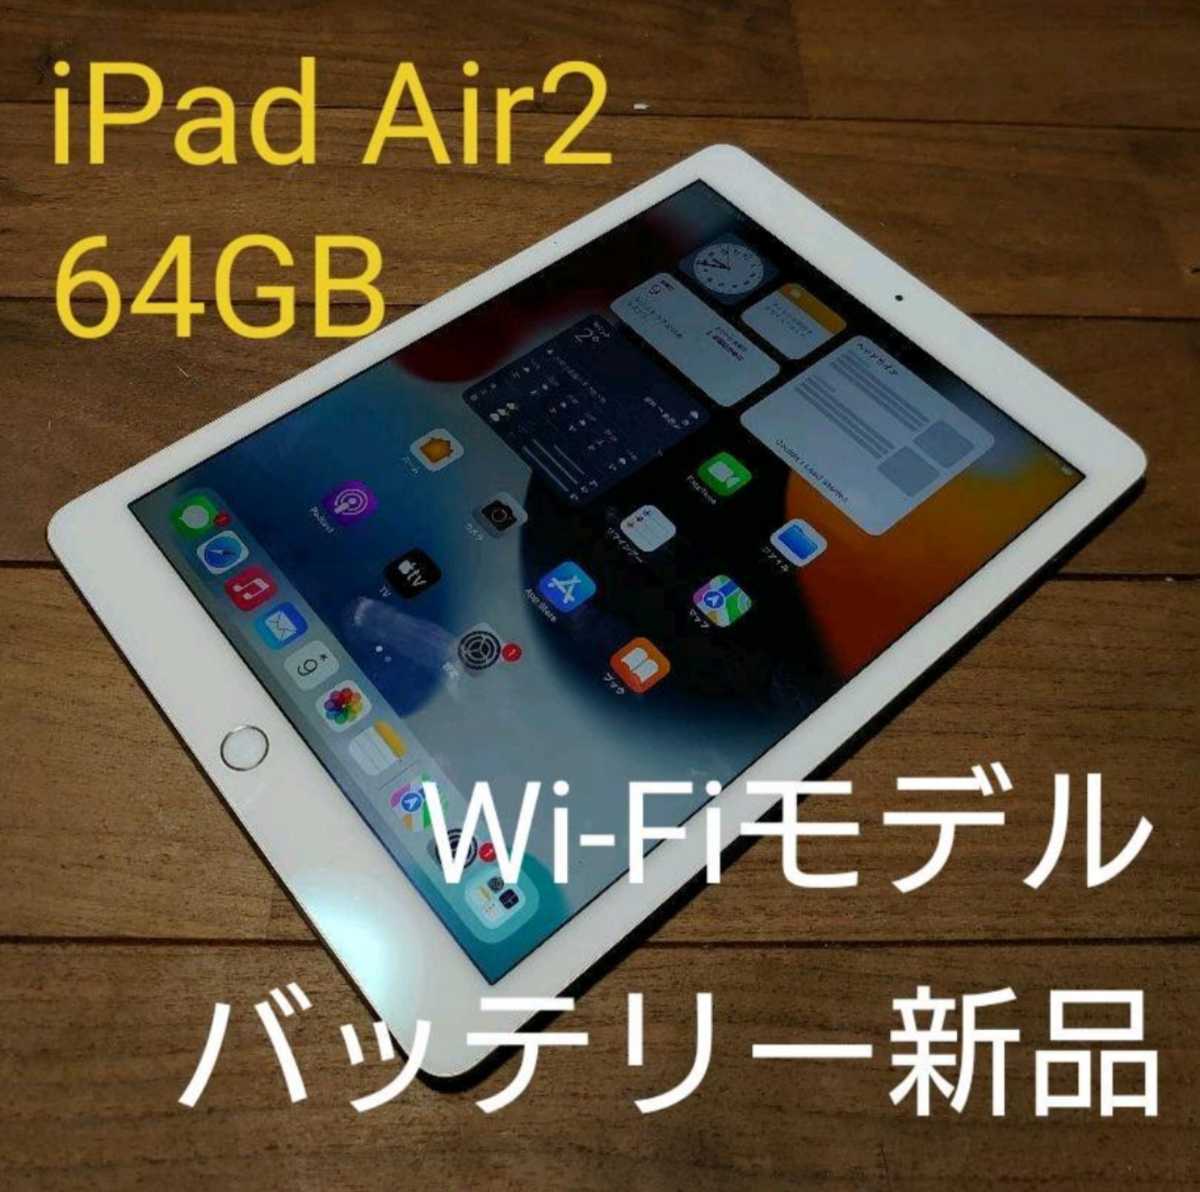 代引き手数料無料 Air4 【新品未開封】iPad シルバー Wi-Fiモデル 64GB - タブレット - alrc.asia